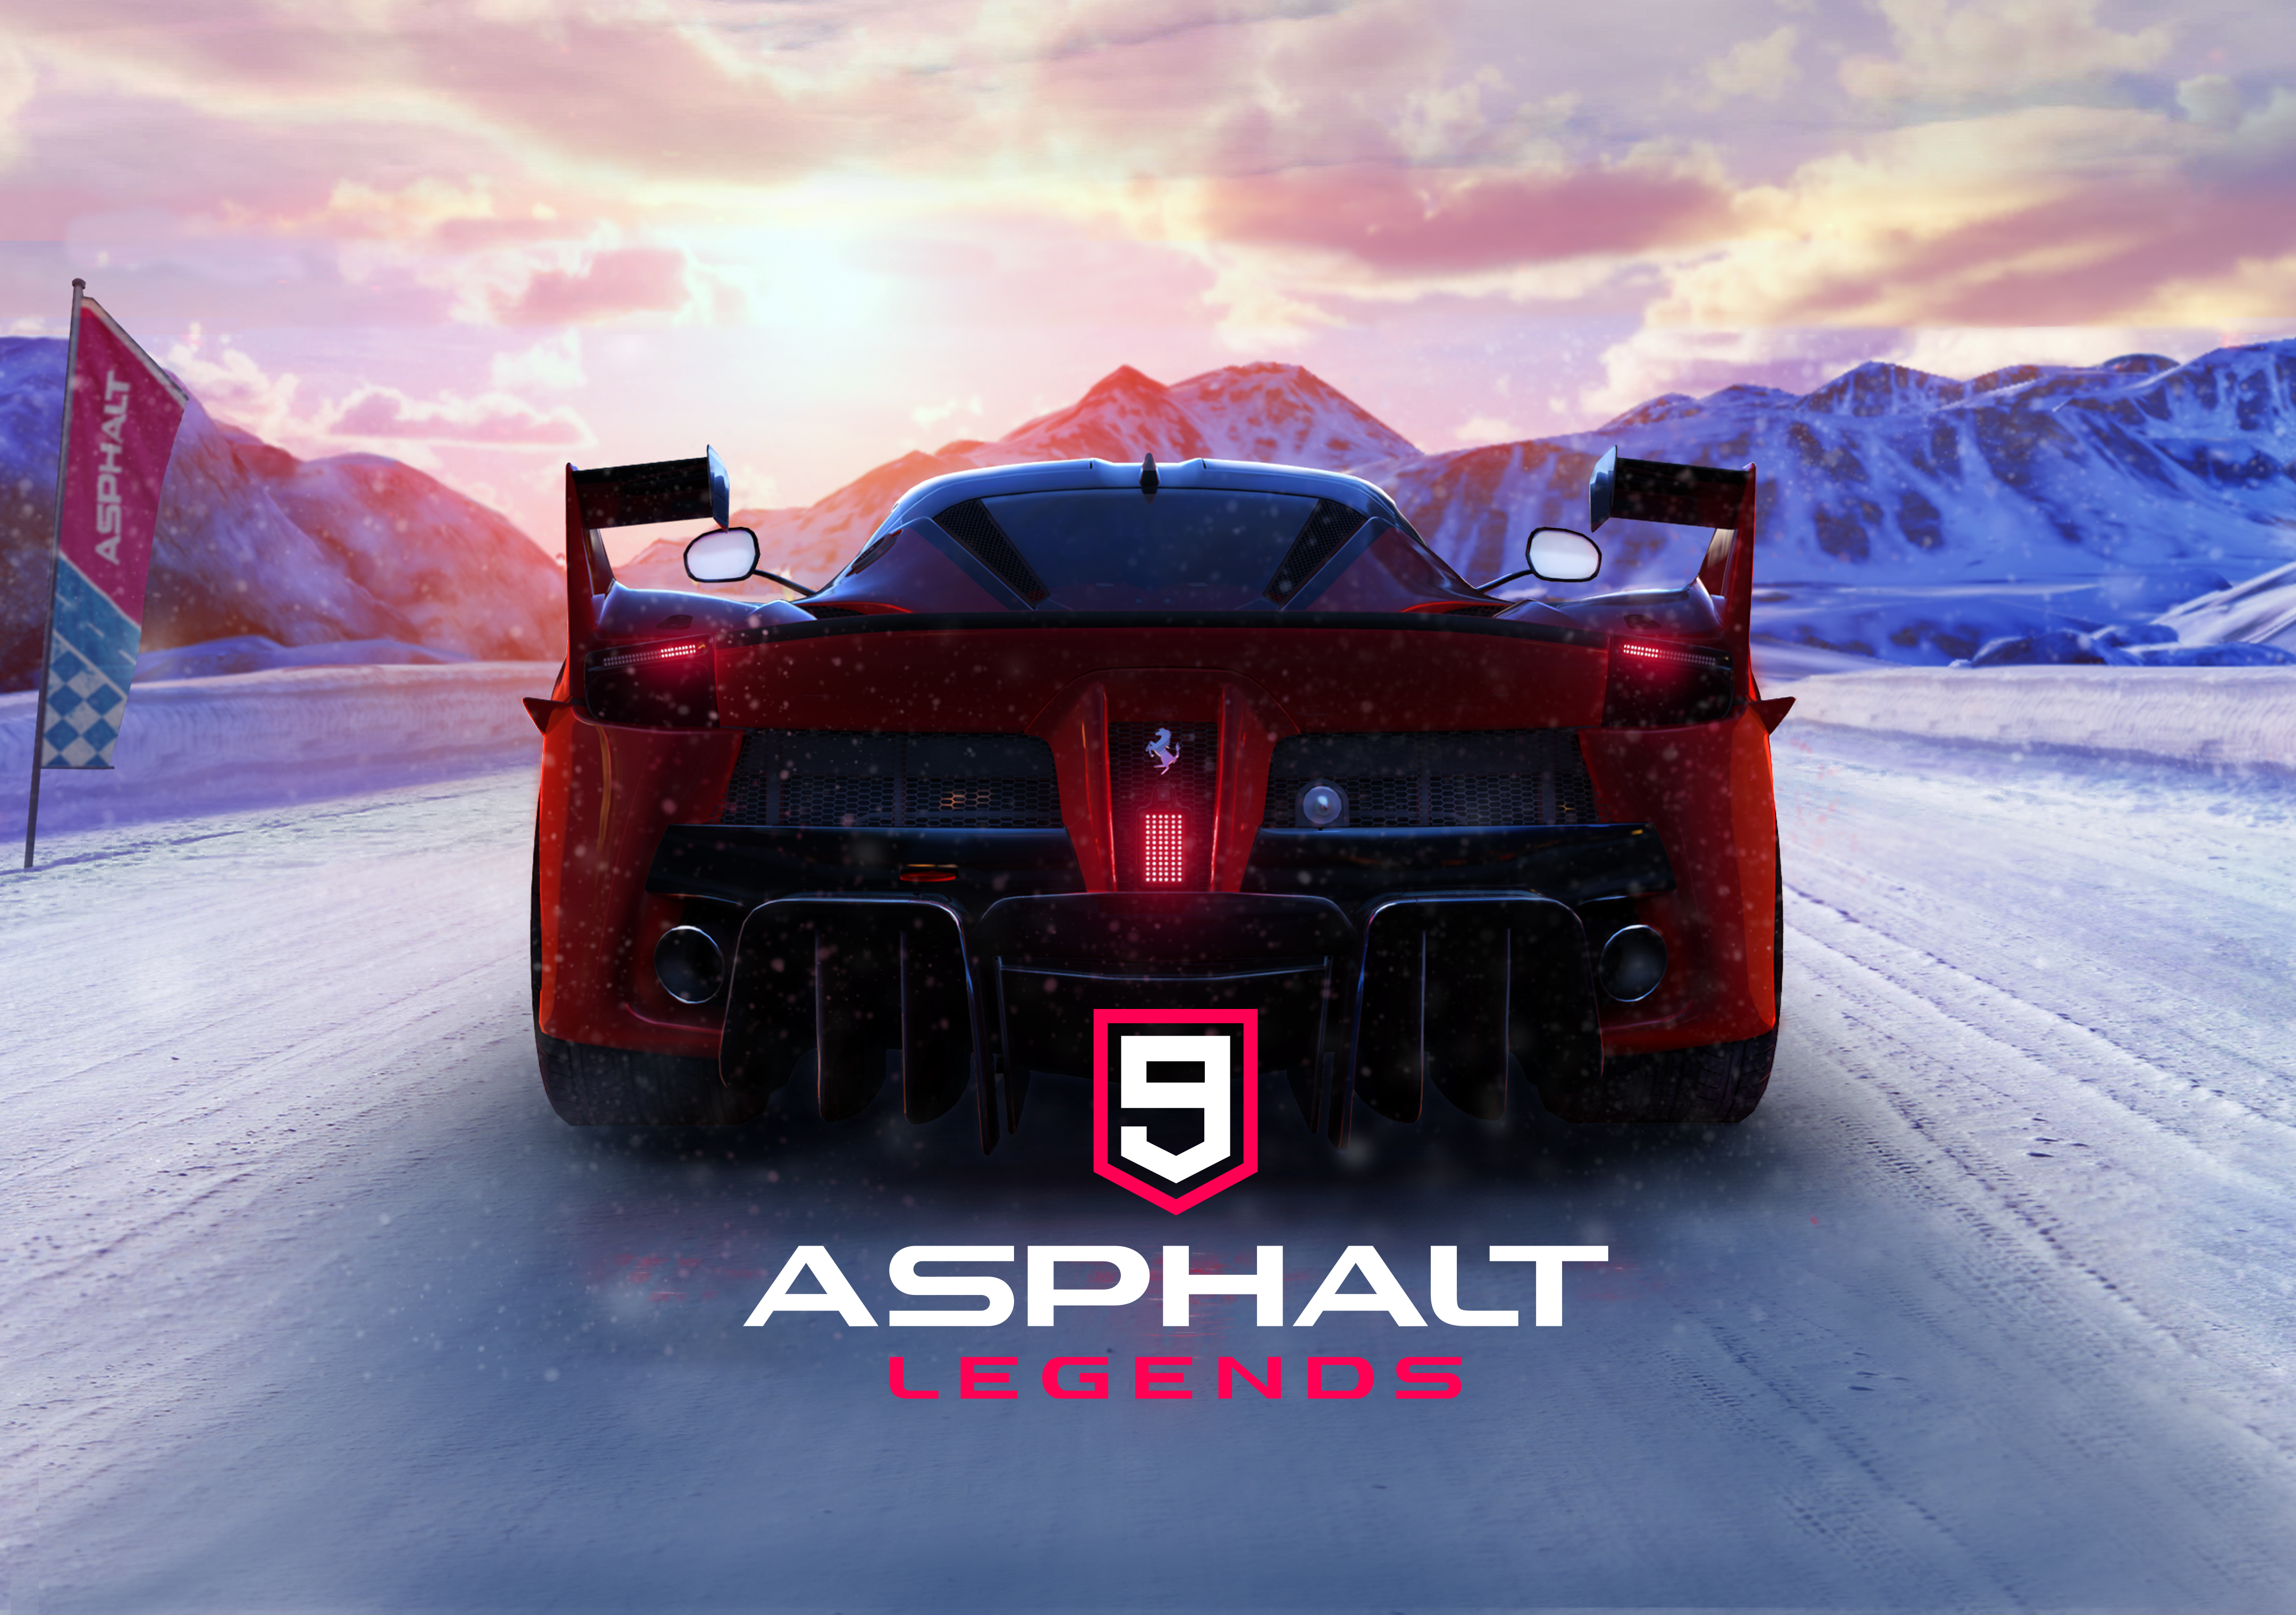 asphalt 9: legends, video game, car, racing, asphalt